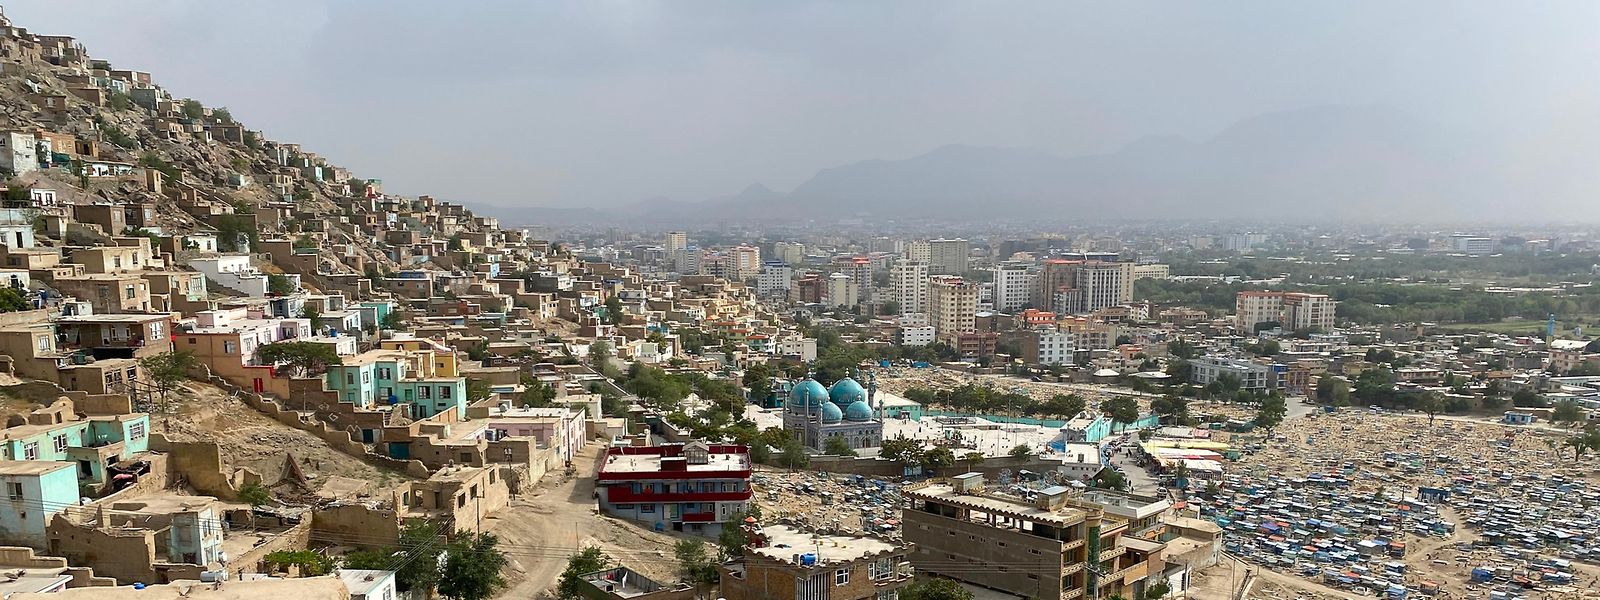 Es ist wohl nur eine Frage der Zeit, wann die Taliban die afghanische Hauptstadt Kabul einnehmen werden. 